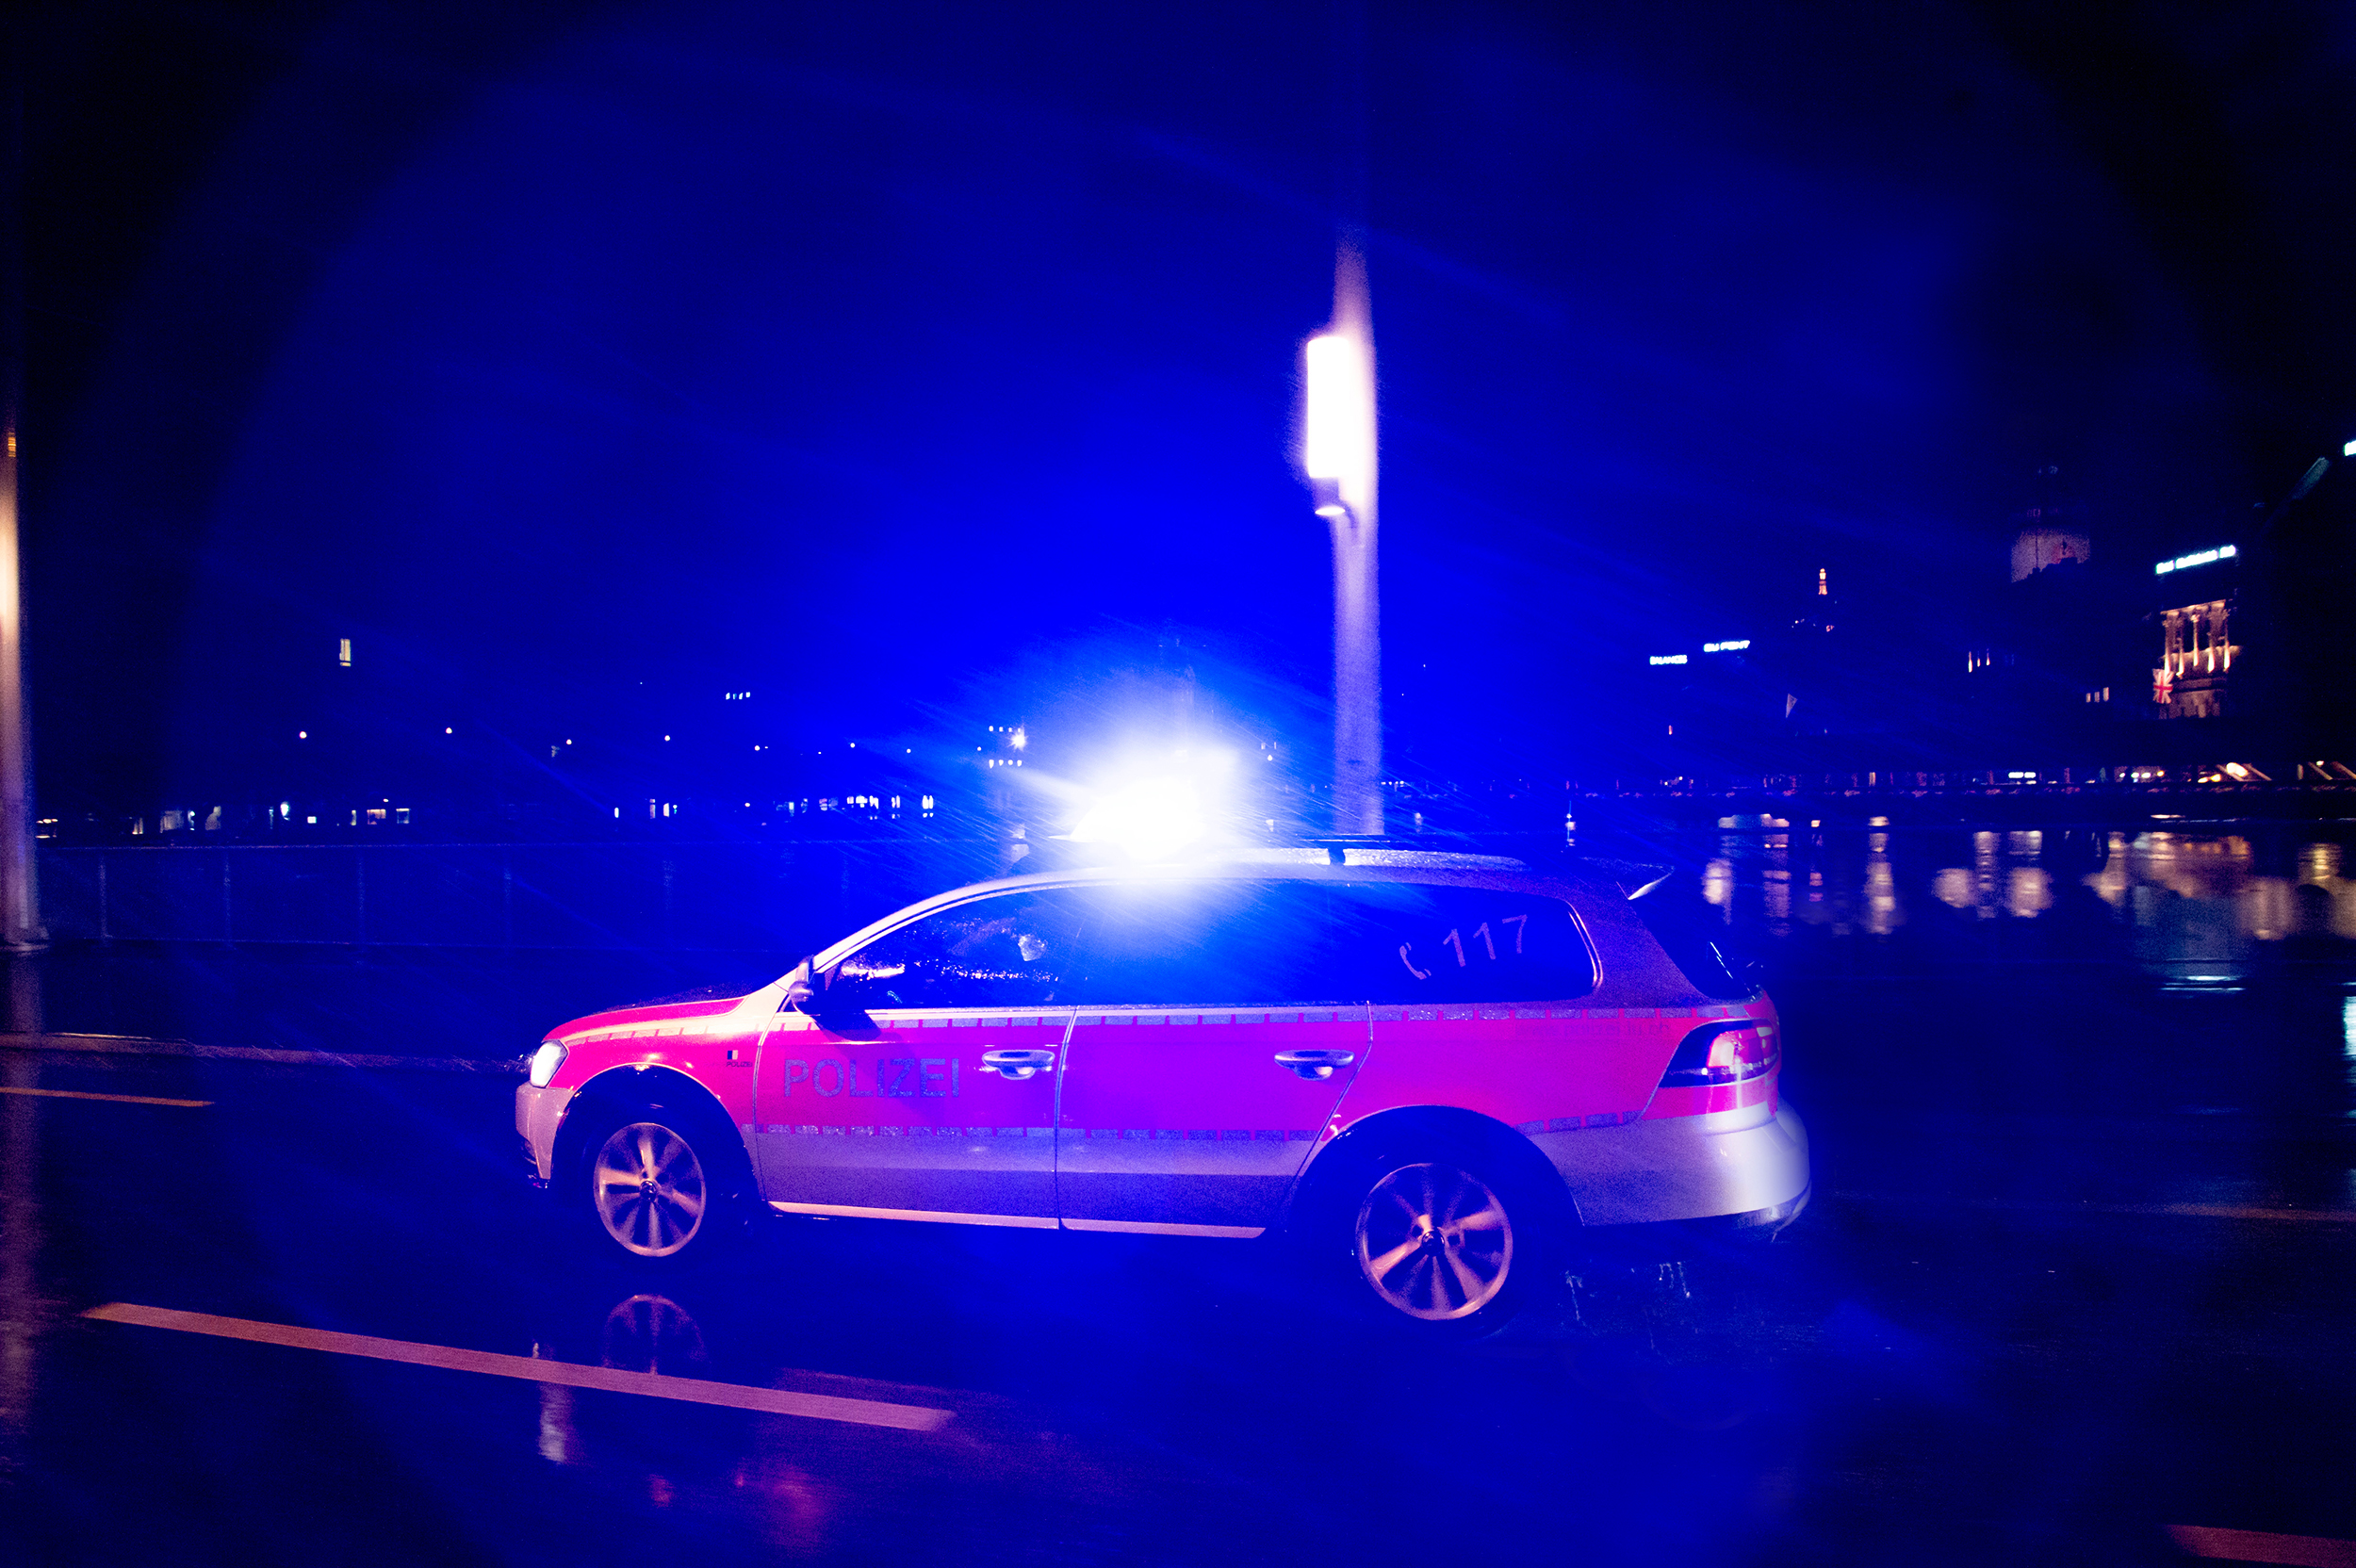 GC-Anhänge beschmieren Einsatzfahrzeug der Luzerner Polizei